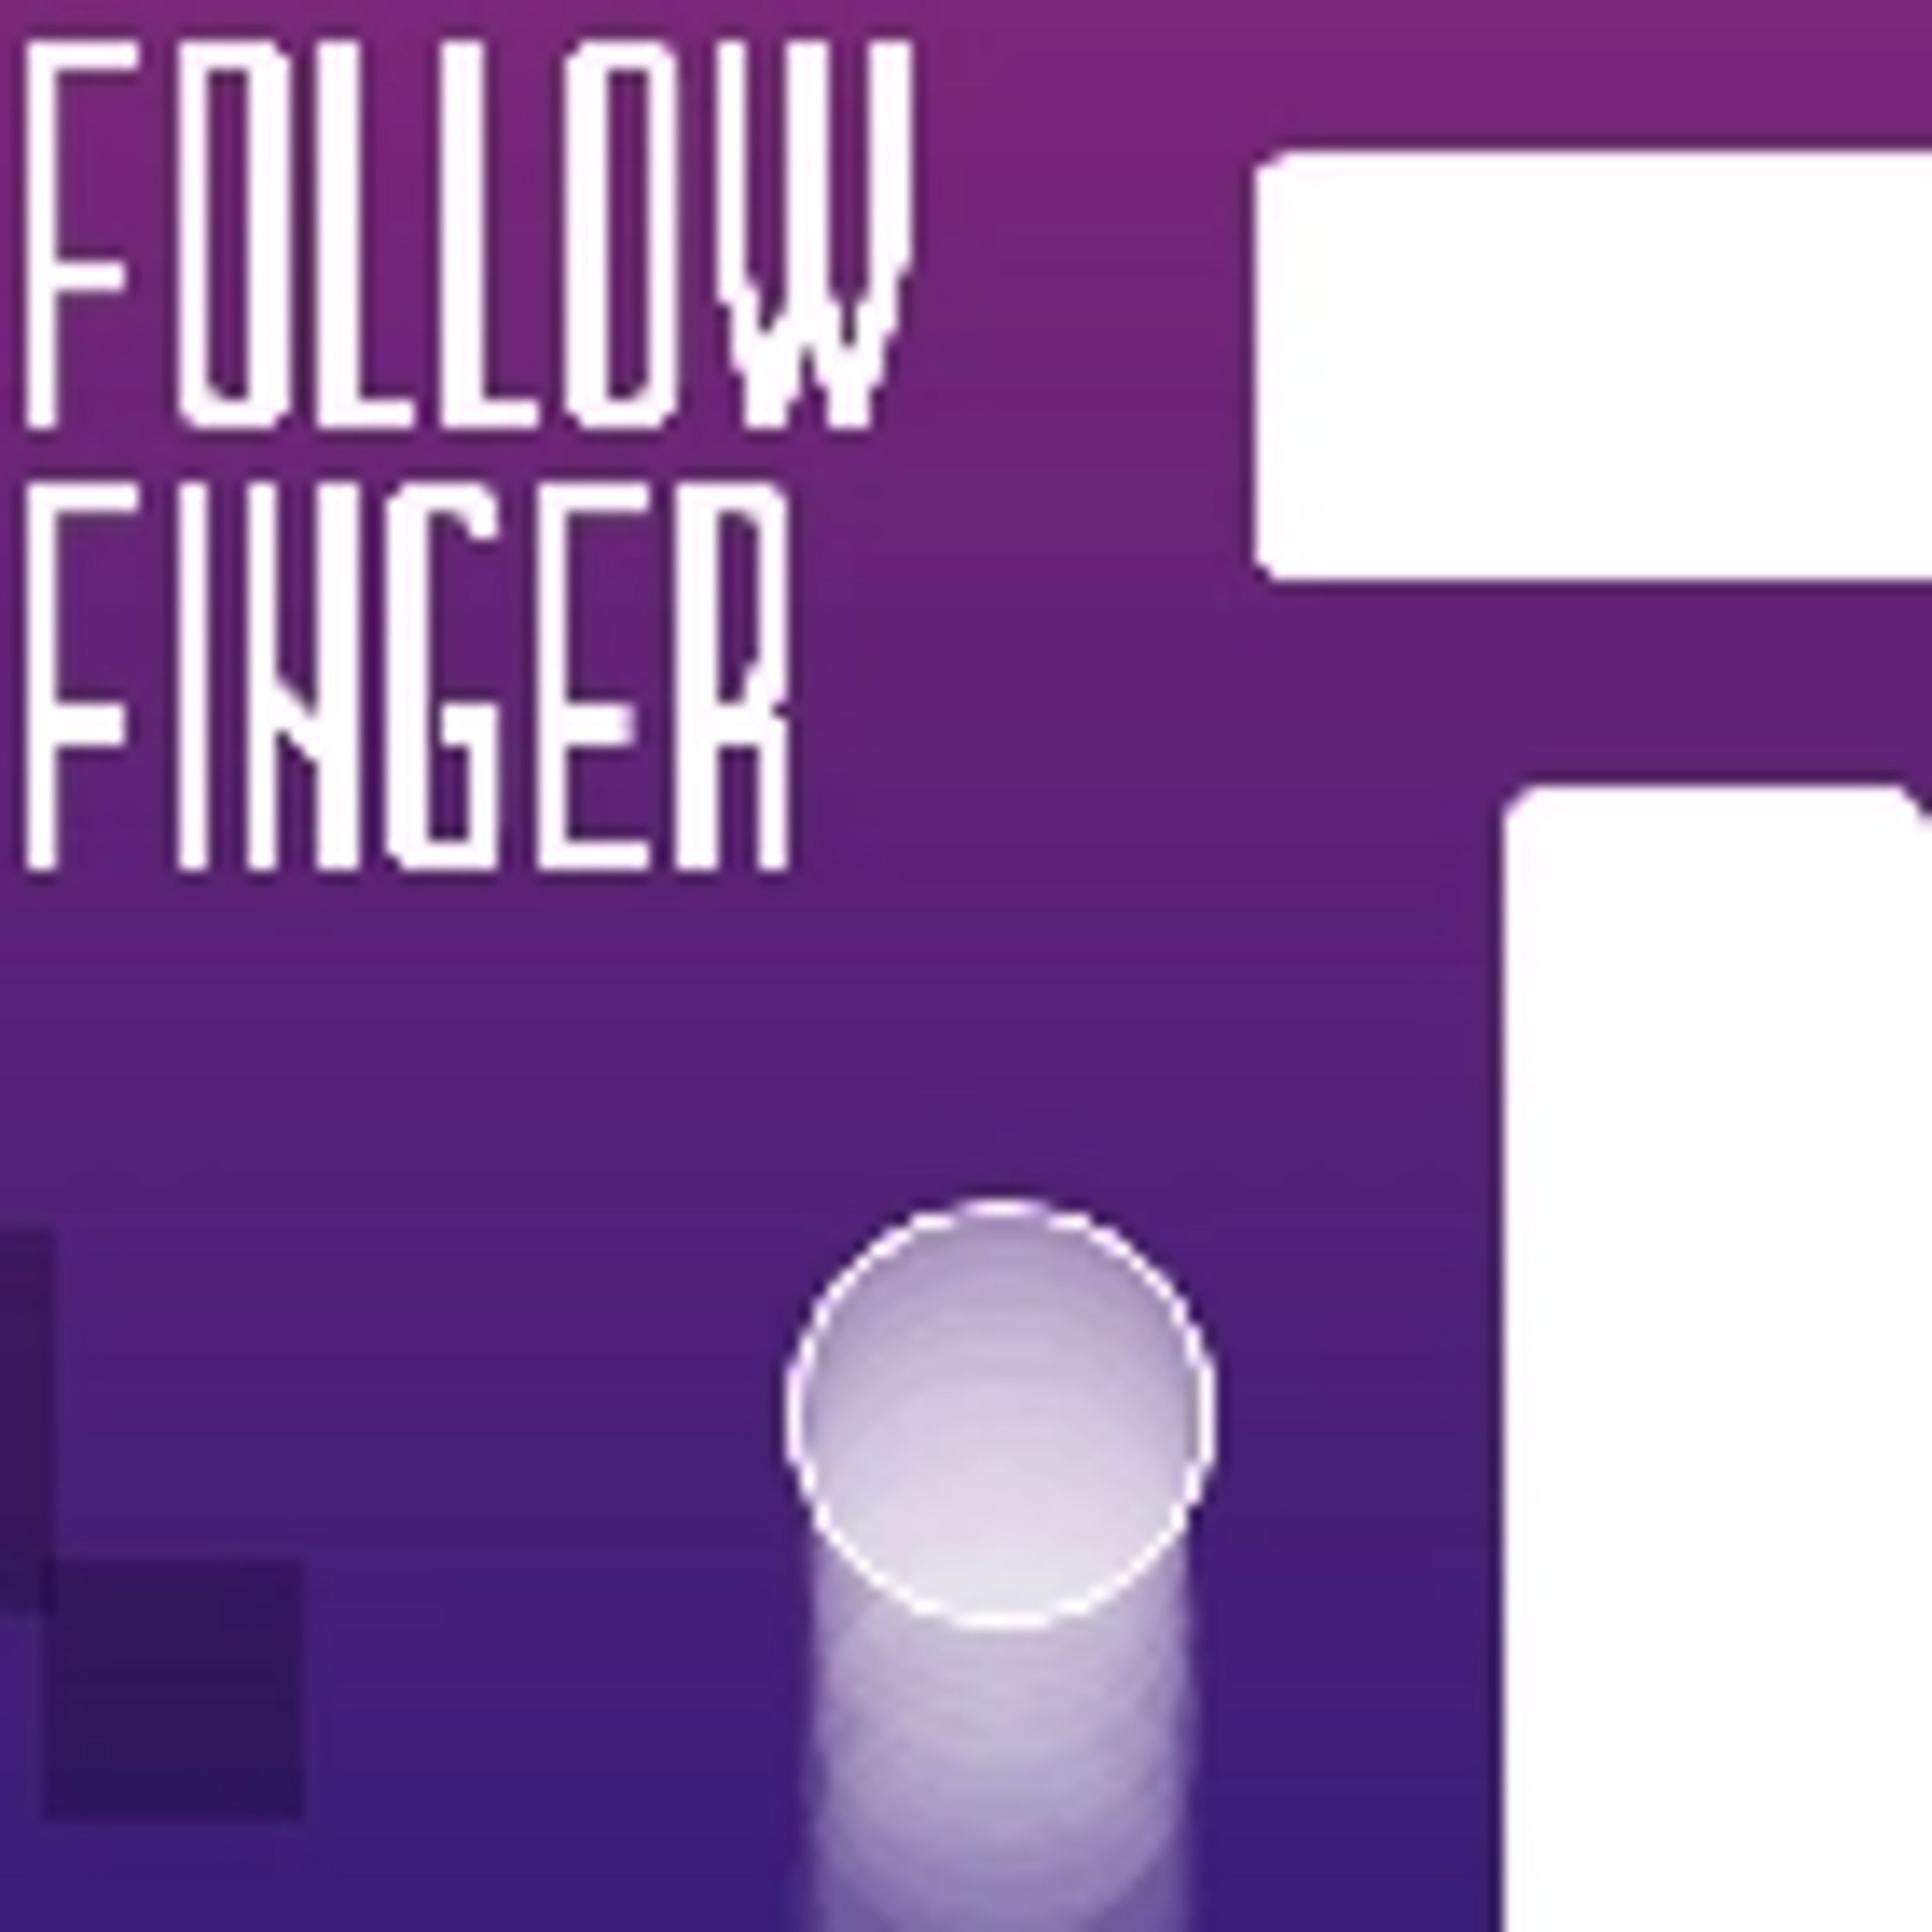 Follow finger